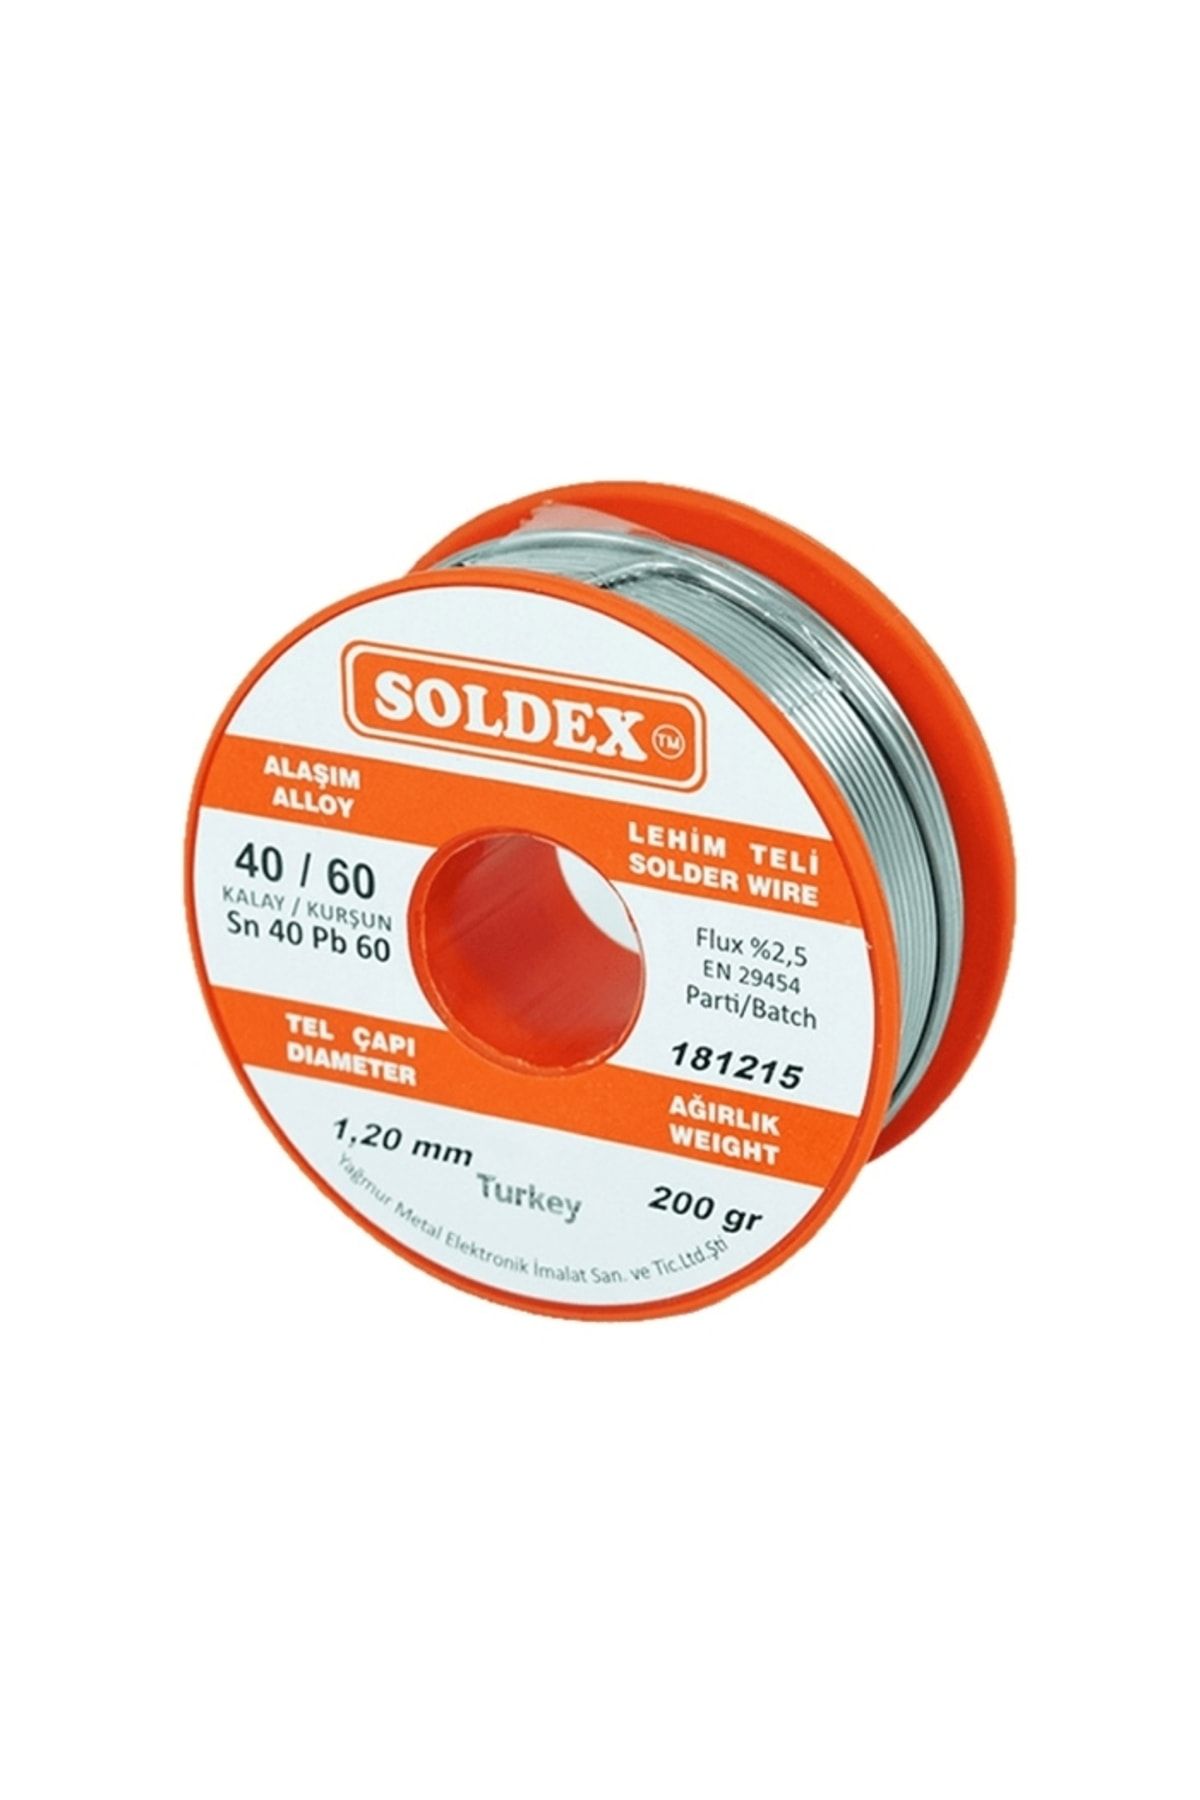 Soldex 40-60 Lehim Teli 200 Gr 1.2 Mm- Sn:40 / Pb:60